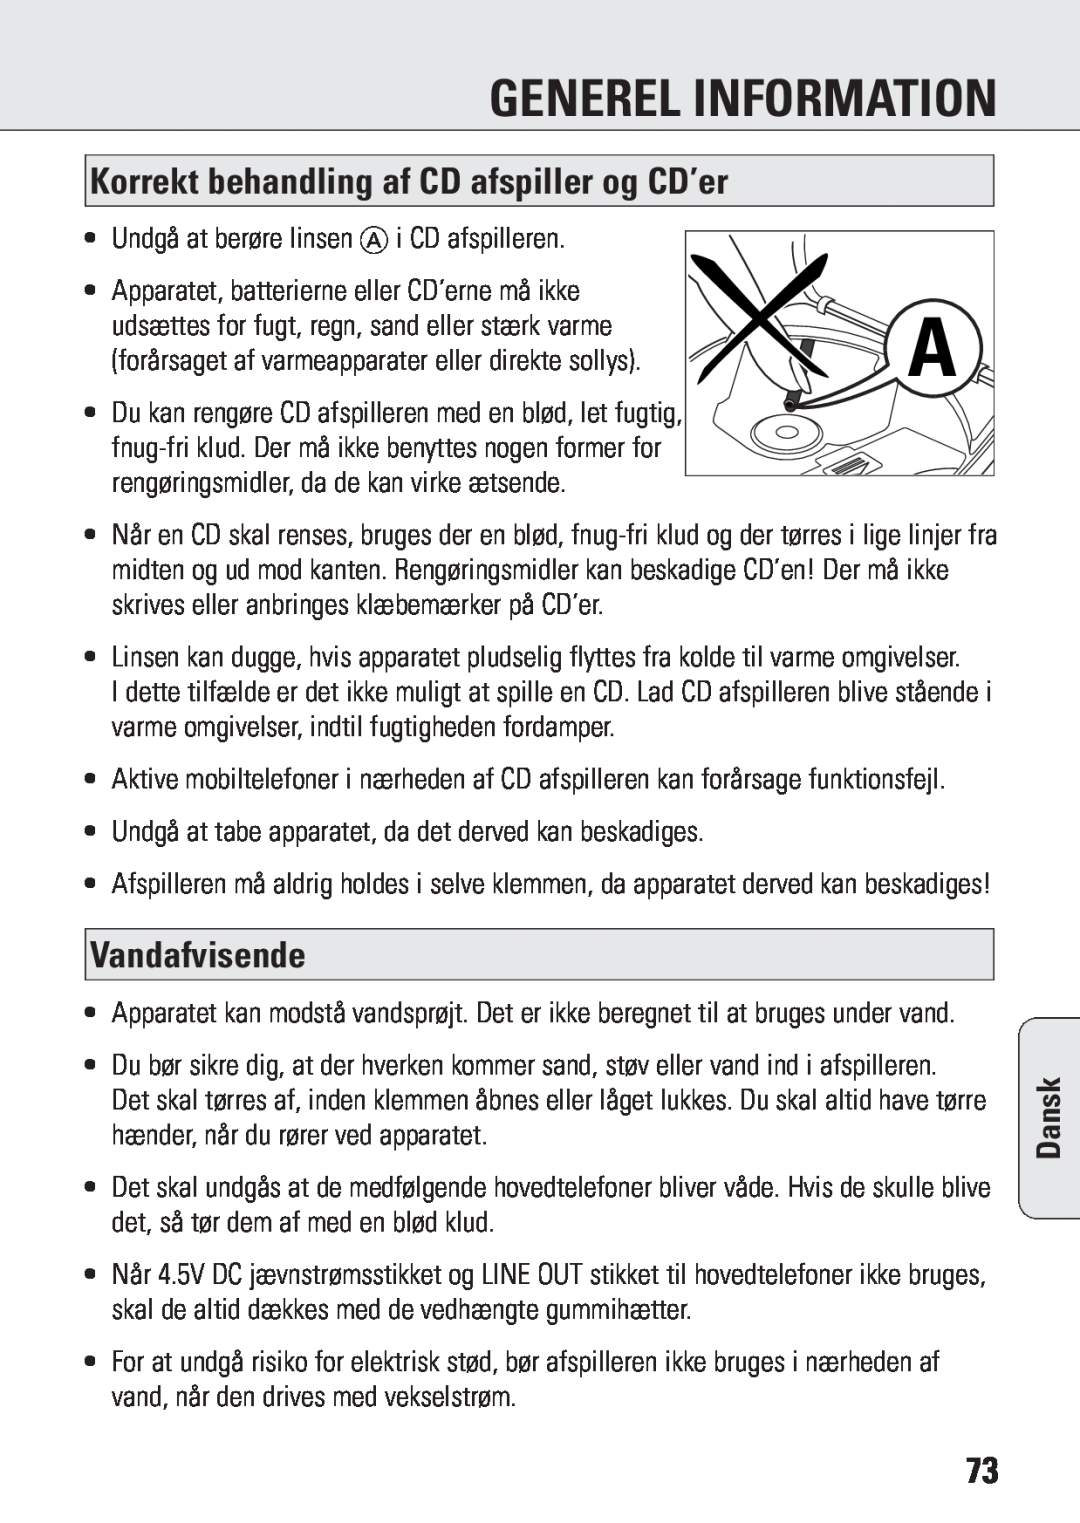 Philips ACT 7583 manual Generel Information, Korrekt behandling af CD afspiller og CD’er, Vandafvisende, Dansk 